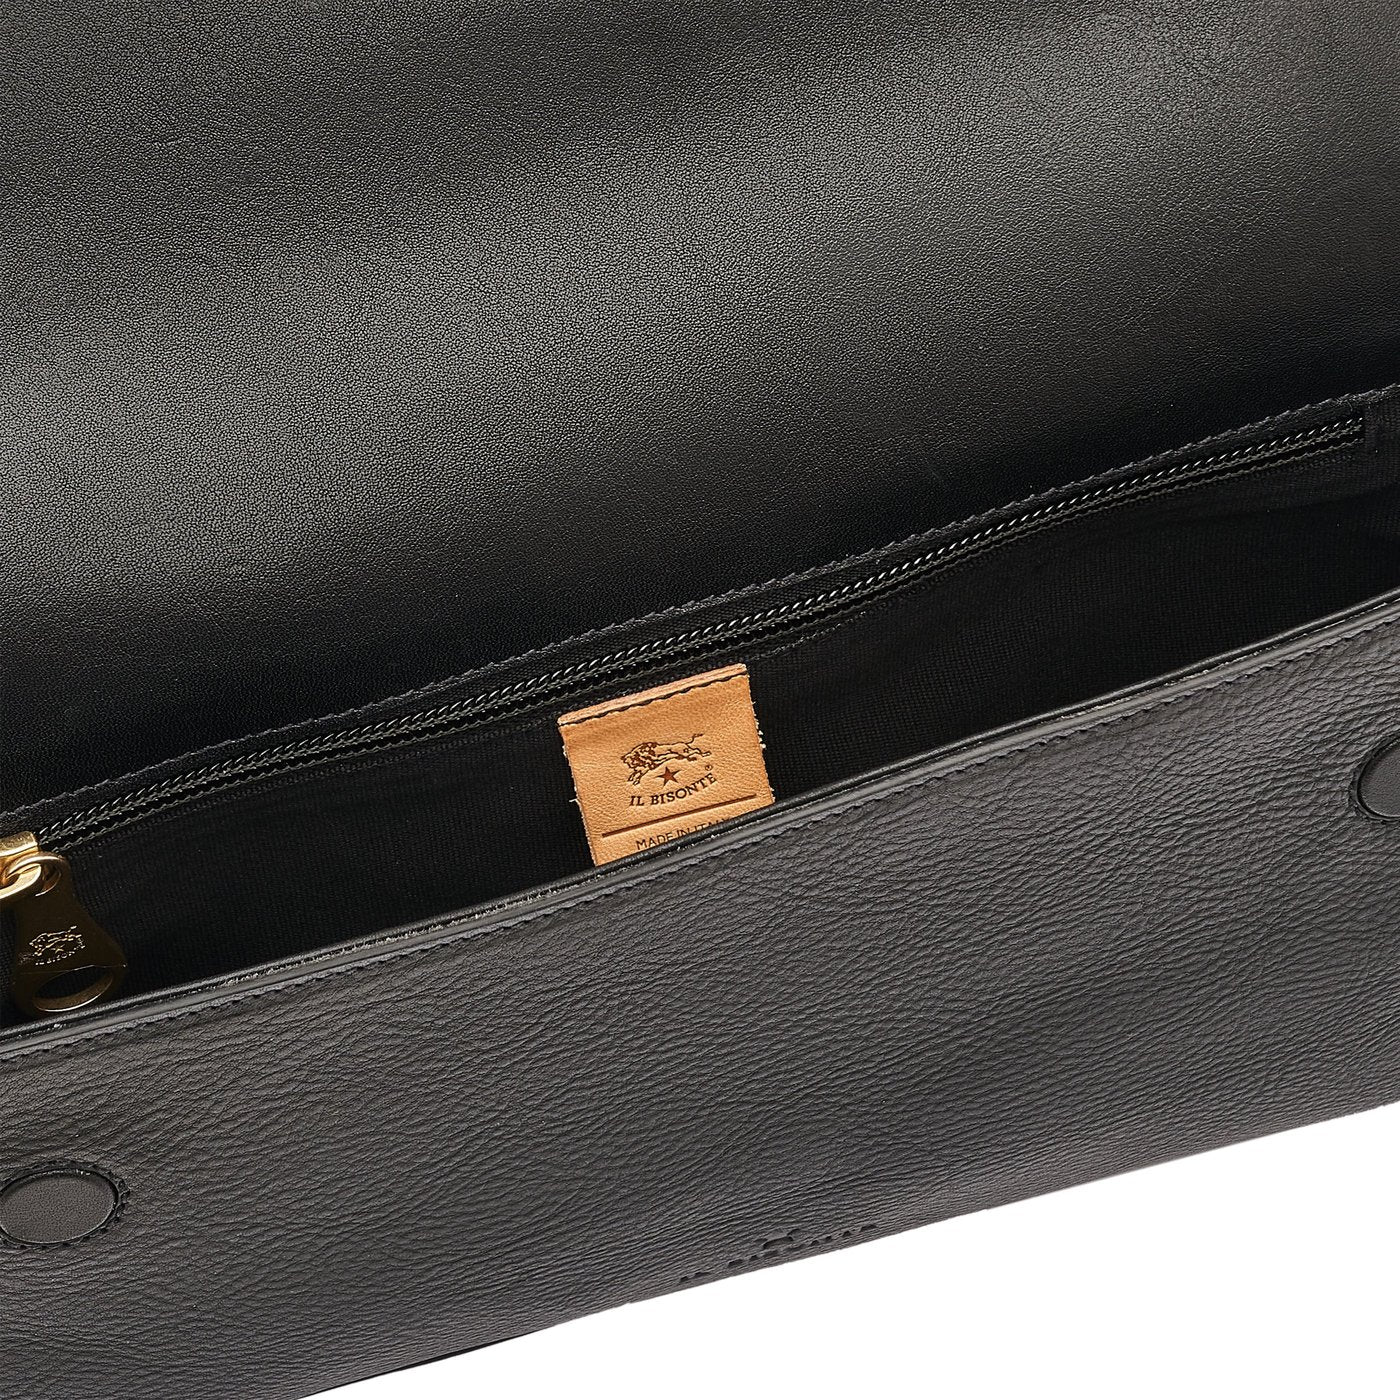 Studio | Women's shoulder bag in leather color black